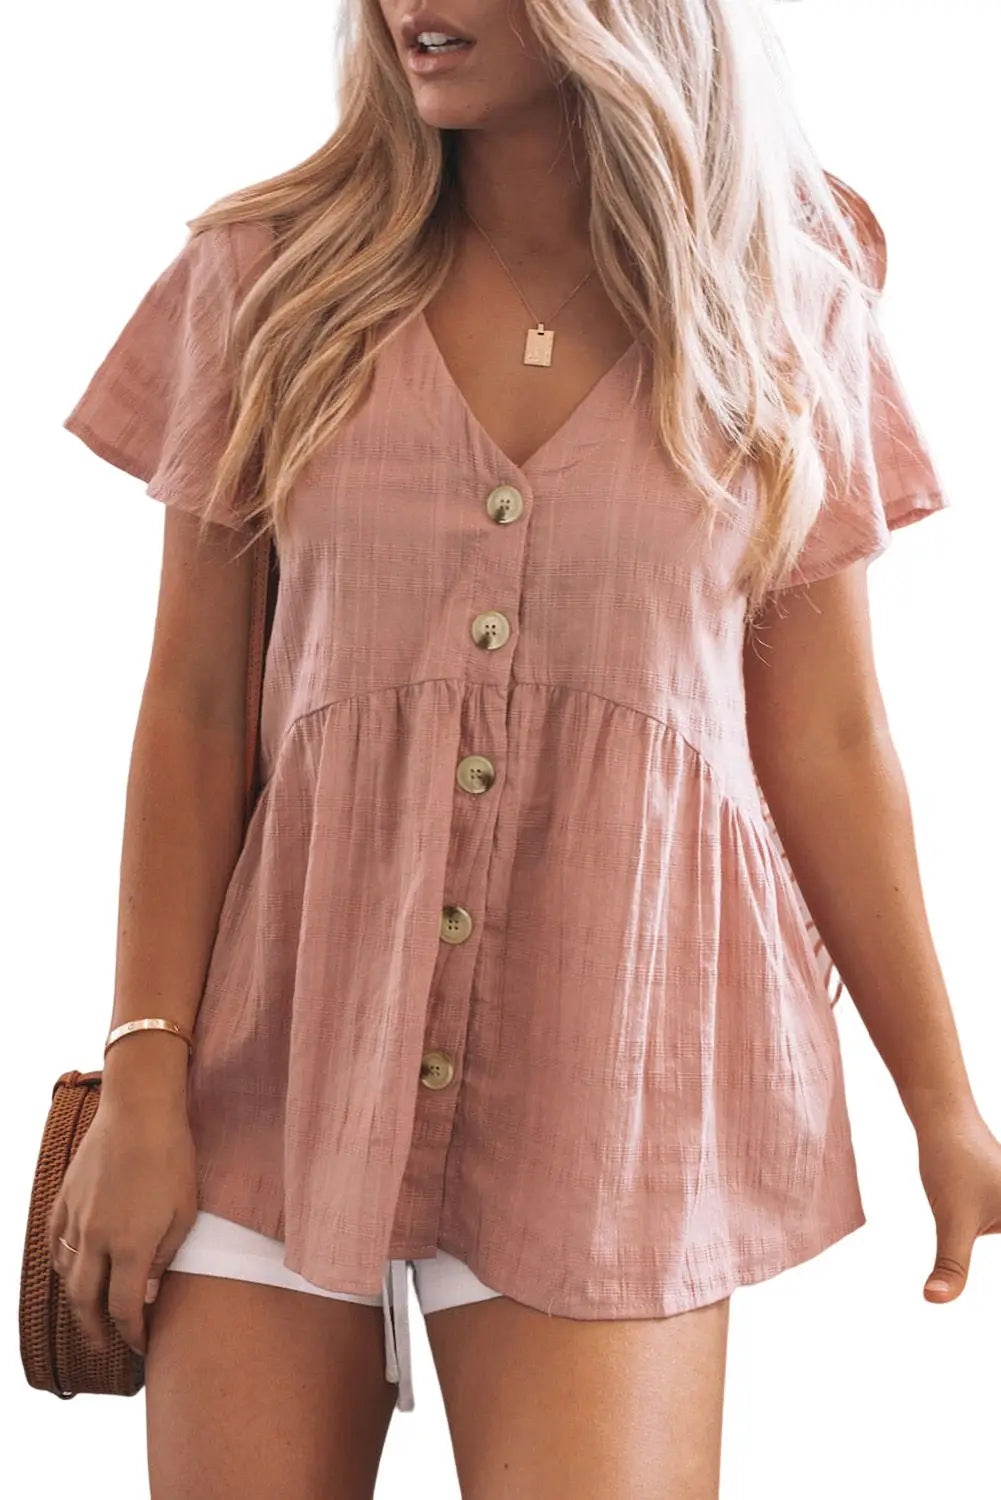 Pink short sleeves buttoned peplum shirt - tops